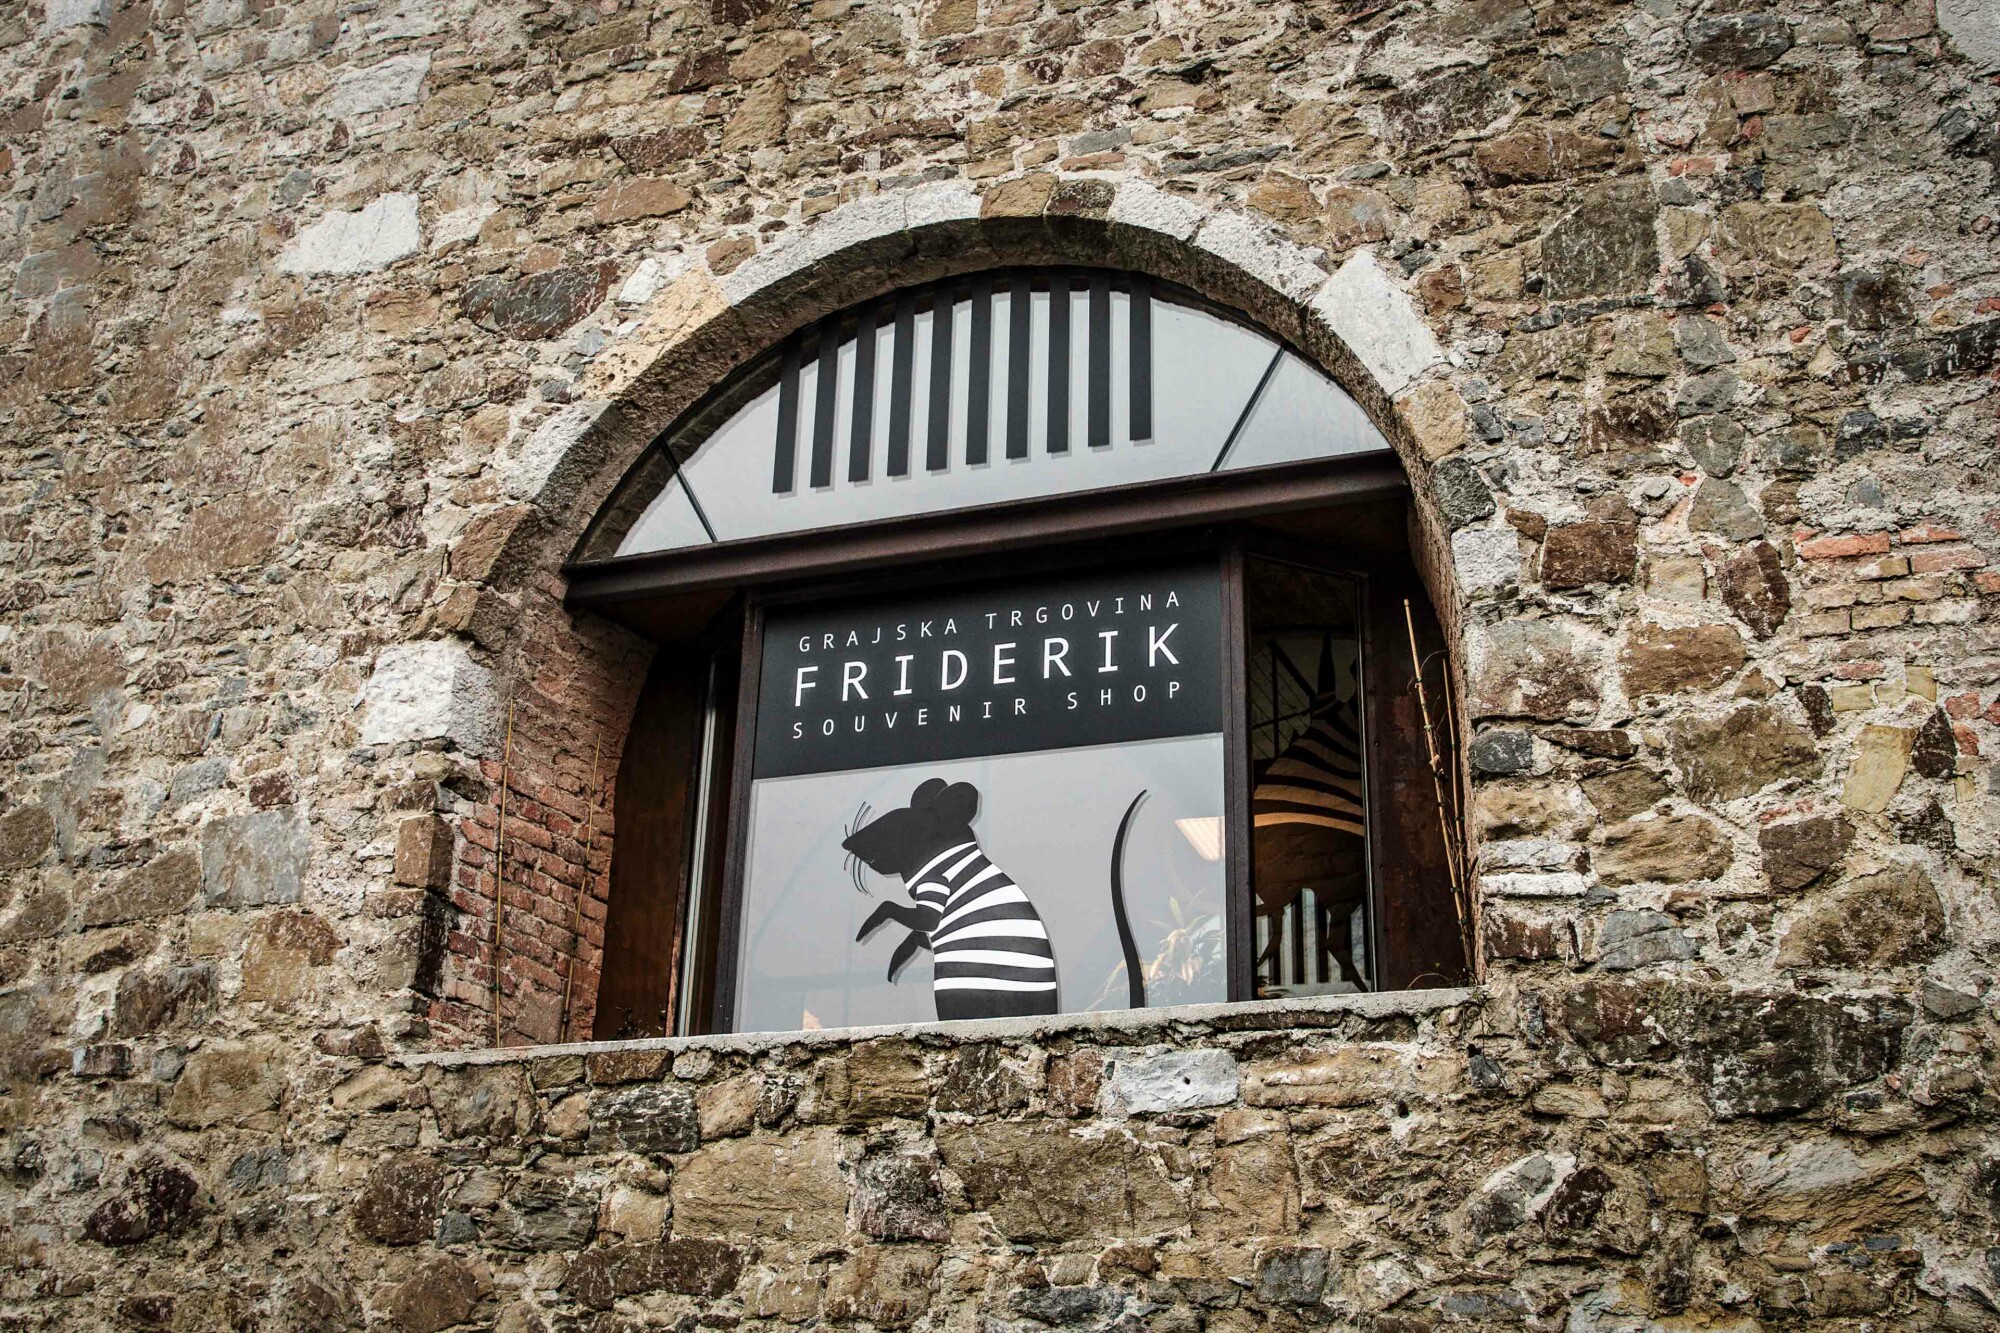 Okno trgovine s spominki Friderik